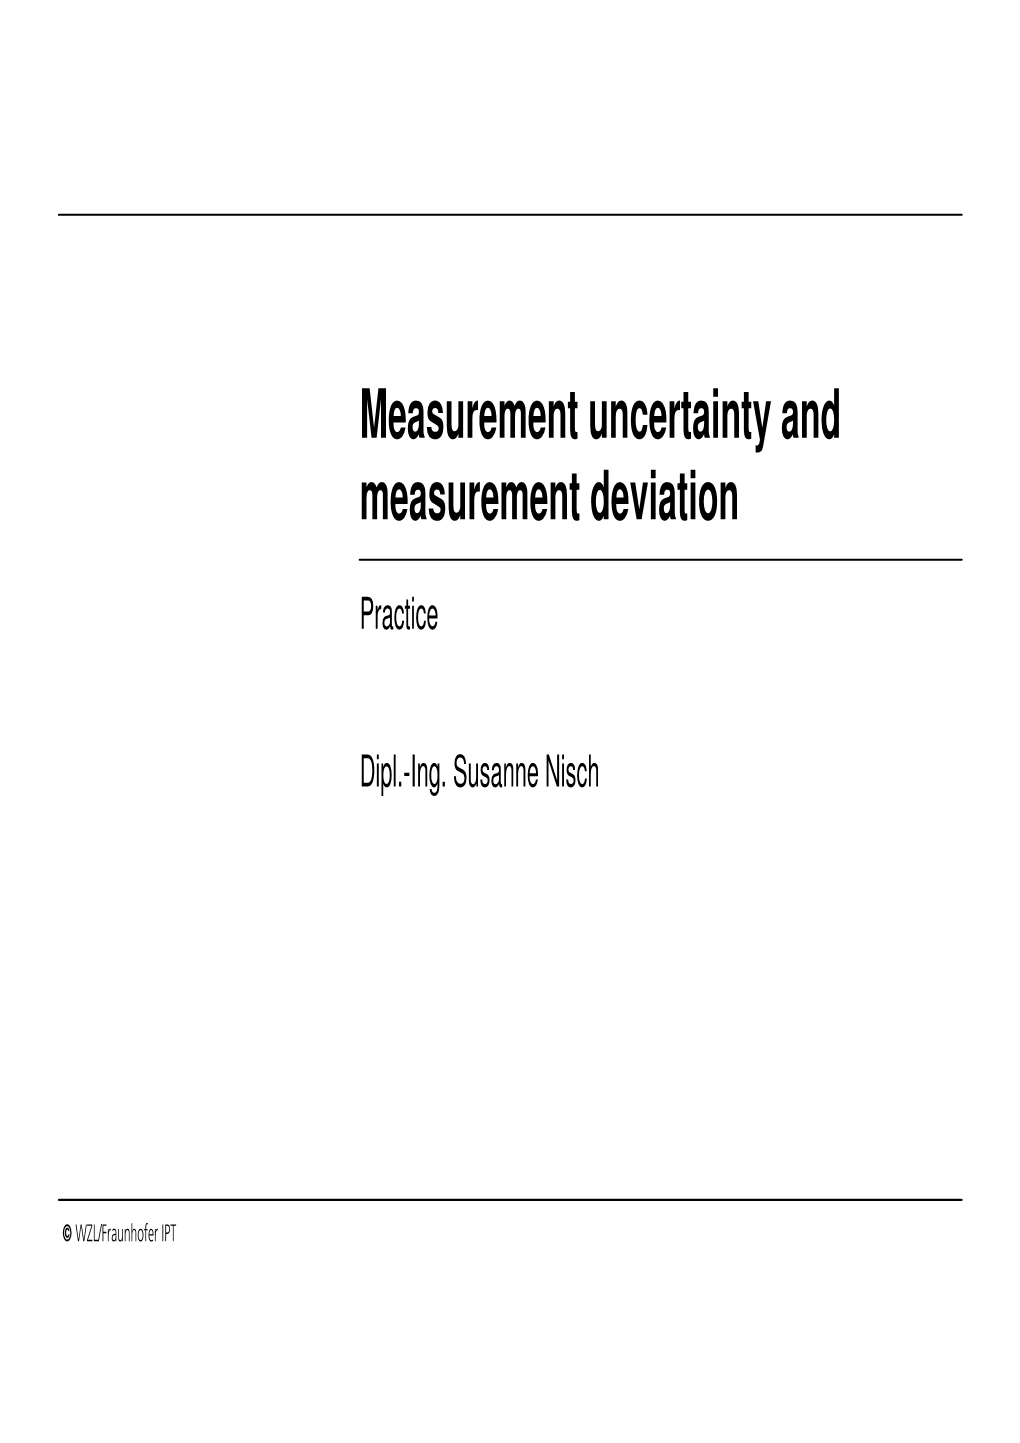 Measurement Uncertainty and Measurement Deviation